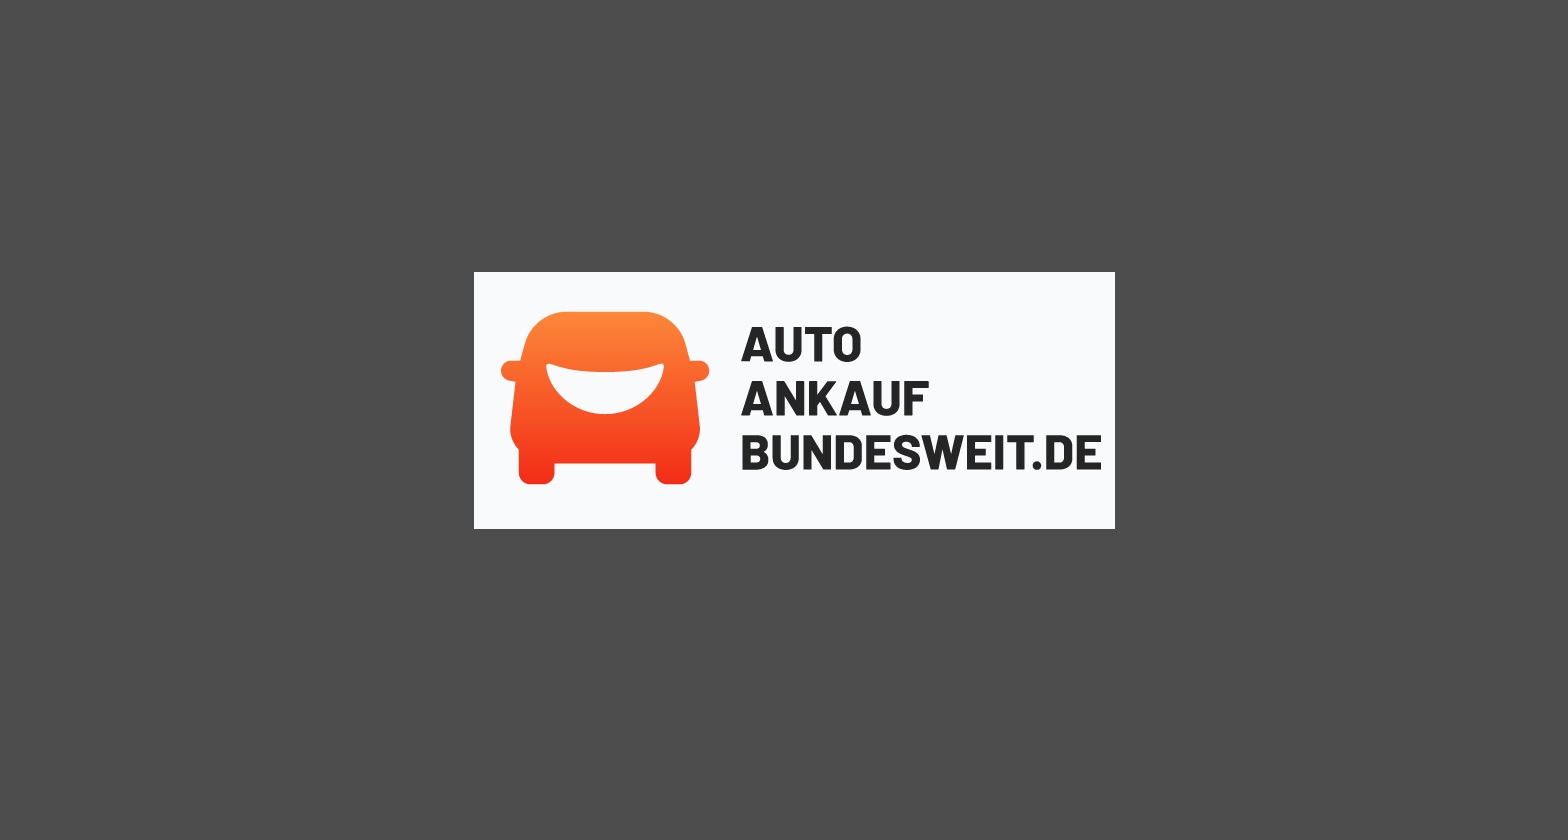 auto ankauf bundesweit wiesbaden logo - Der Autoankauf Wiesbaden in Hessen kauft Unfallwagen und Gebrauchtwagen aller Art zu Top-Konditionen an